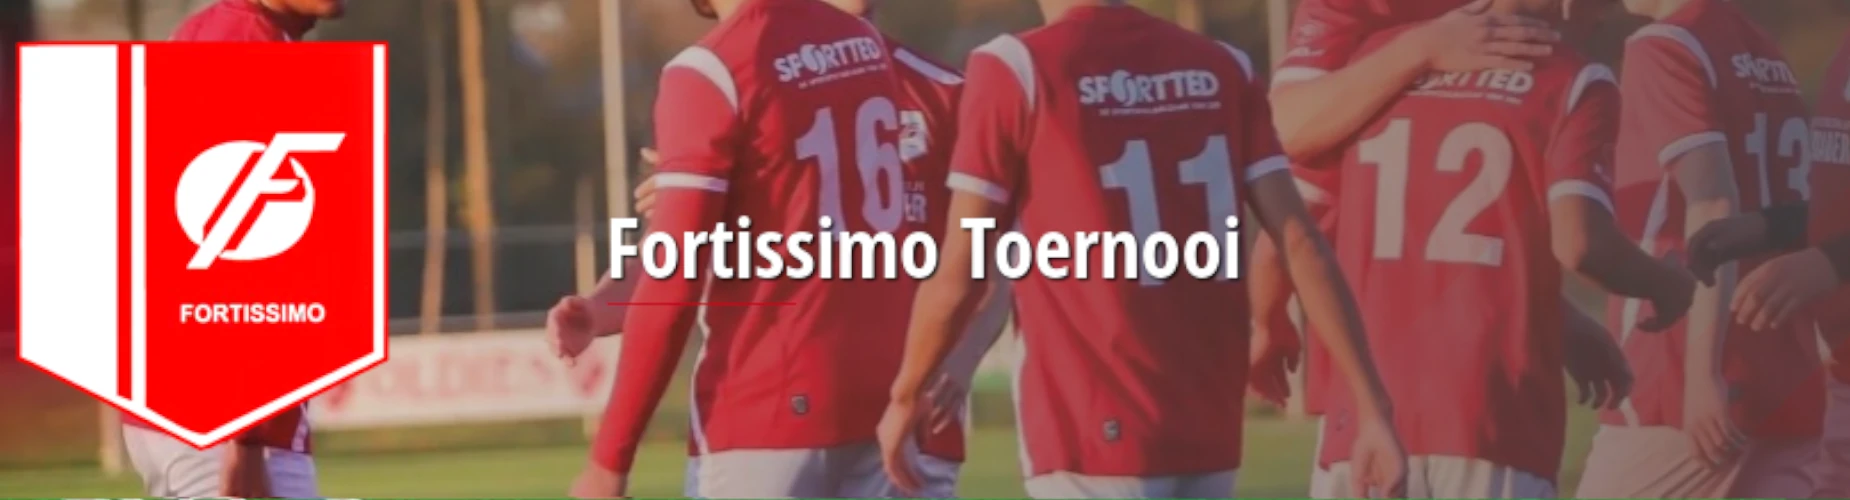 Banner - JO13 - Fortissimo Toernooi - KSV Fortissimo - Ede